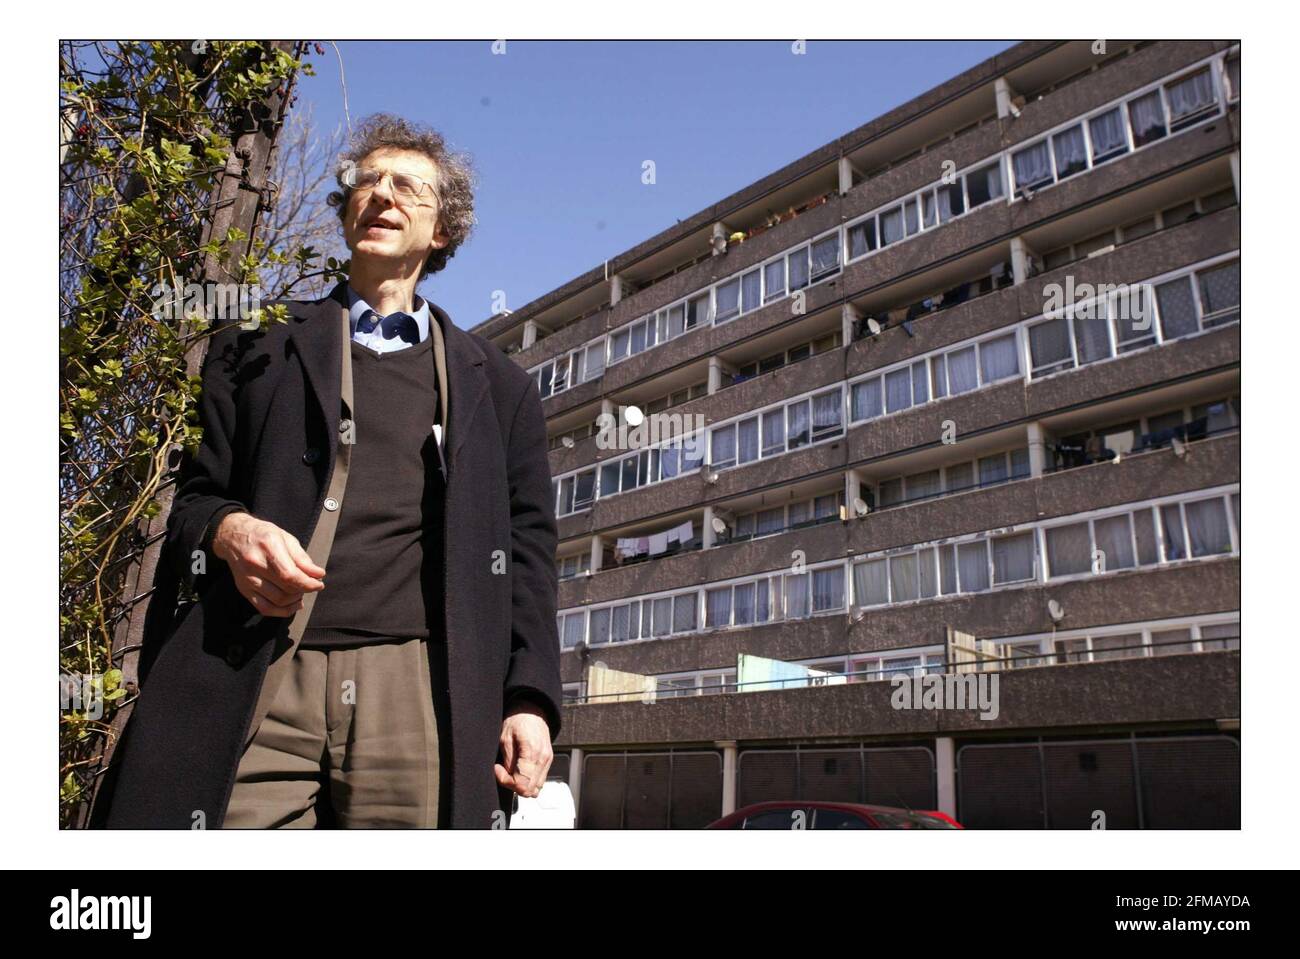 Das Anwesen von Aylesbury, auf dem Tony Blair sprach, nachdem er 1997 nachmittags gemacht wurde. Piers Corbyn Tennant Repräsentant für das Gebiet.pic David Sandison 11/4/2005 Stockfoto